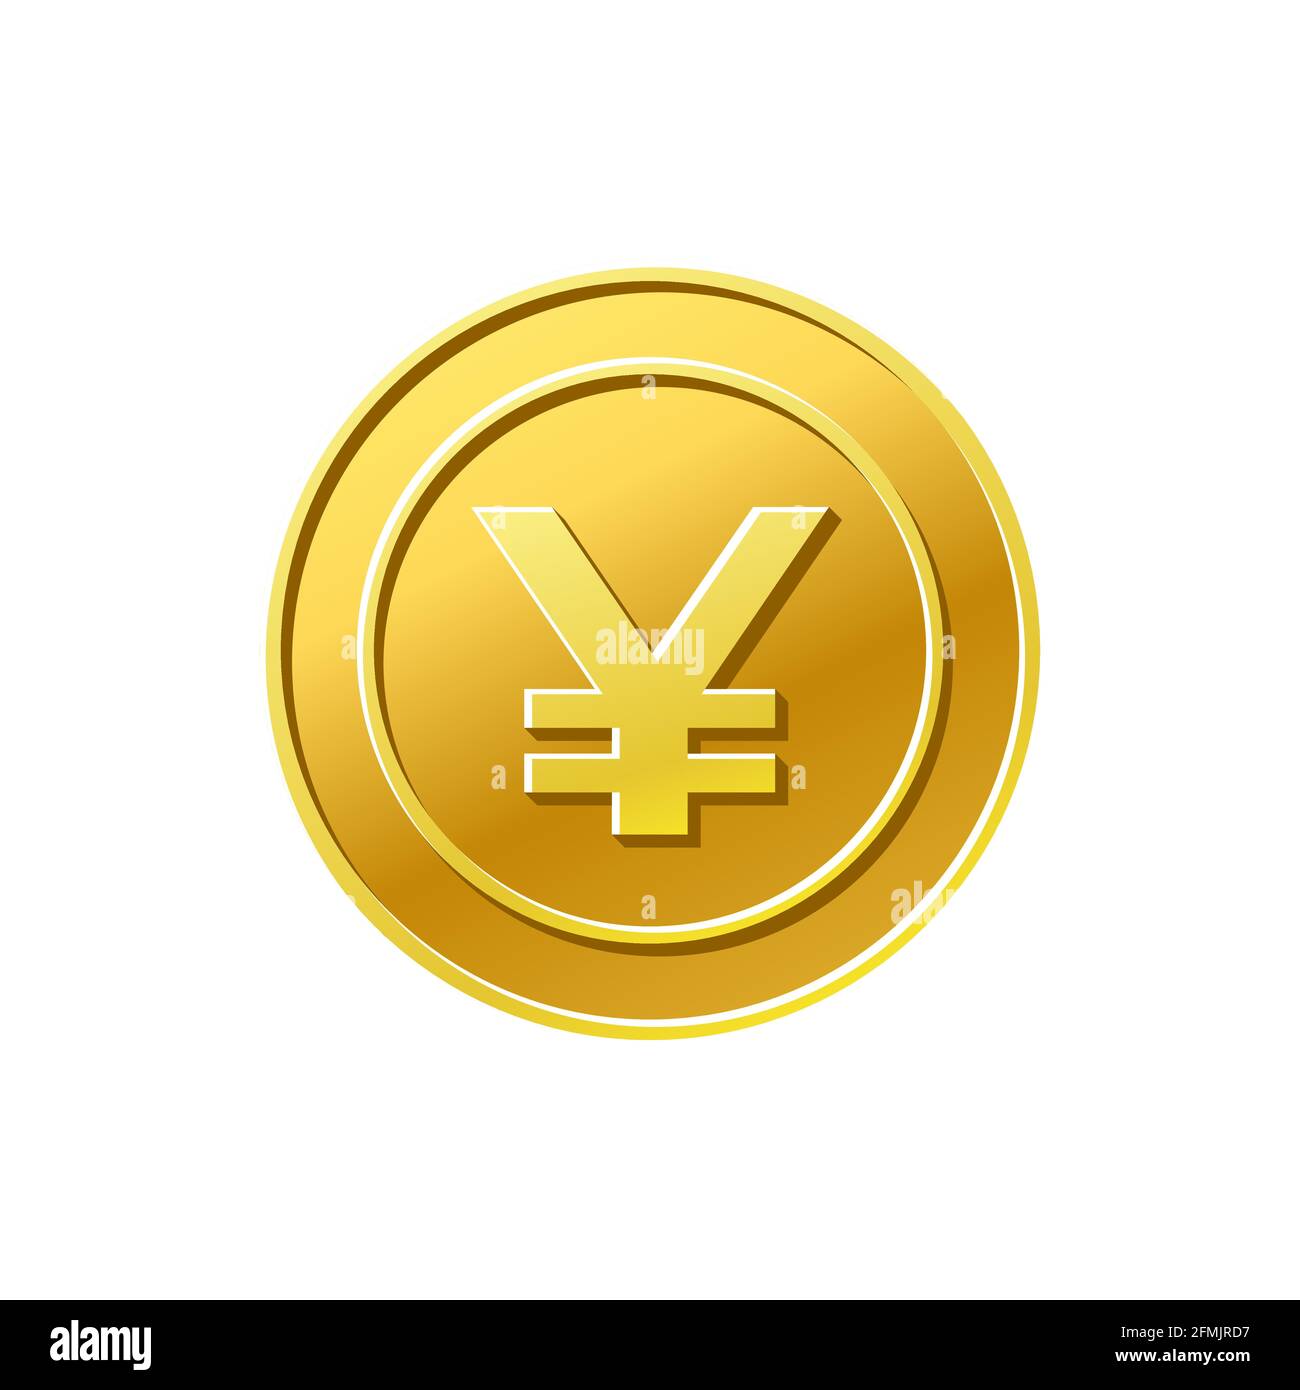 Coin icon. Japanese yen sign. Golden coin Stock Vector